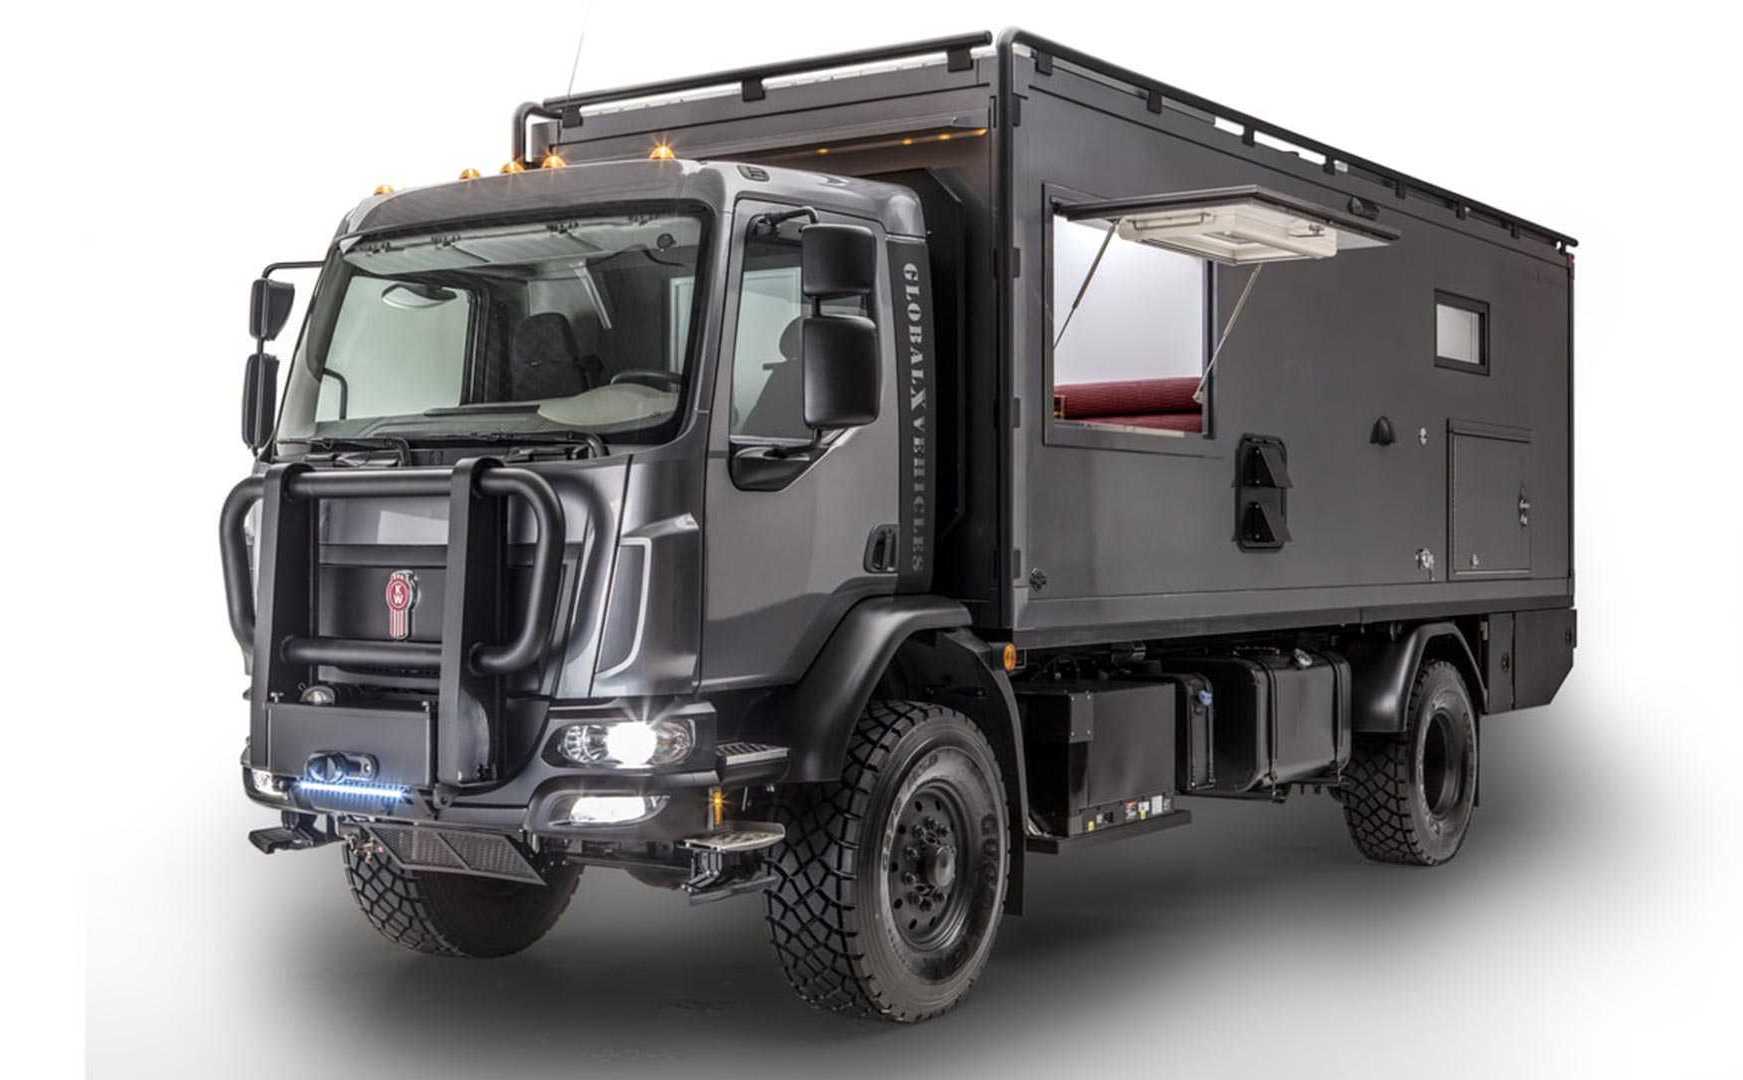 GEV Patagonia - xe tải 4x4 chuyên phục vụ dã ngoại, động cơ 6.7 lít, có phòng ngủ, phòng tắm và bếp